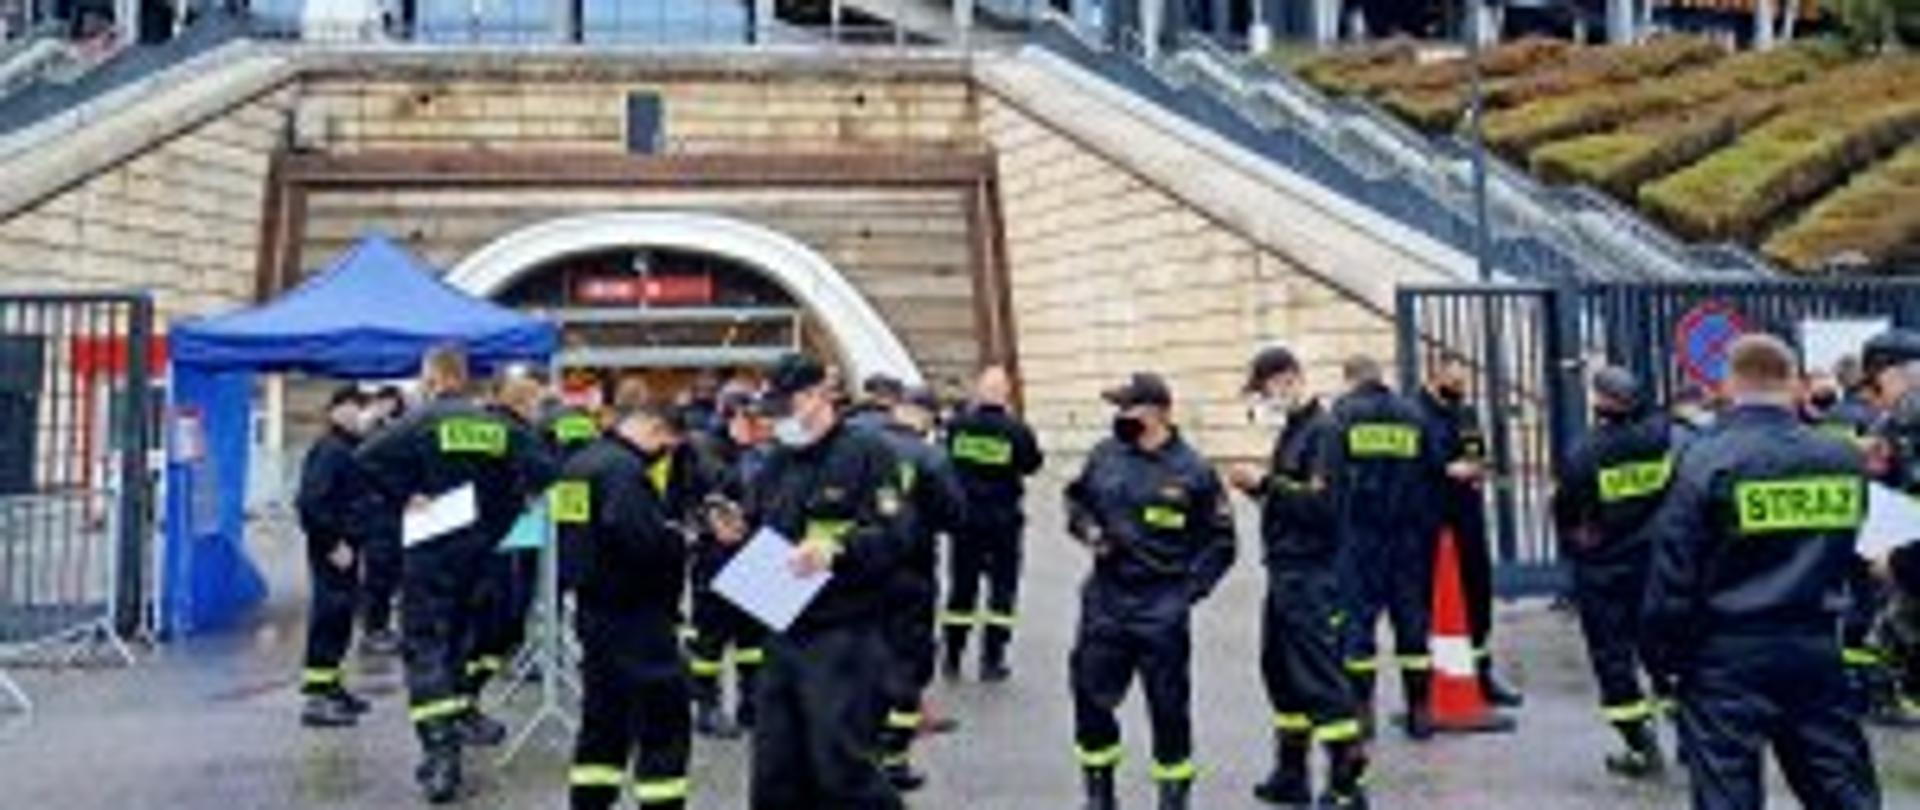 Strażacy z warmii i mazur przed stadionem narodowym.